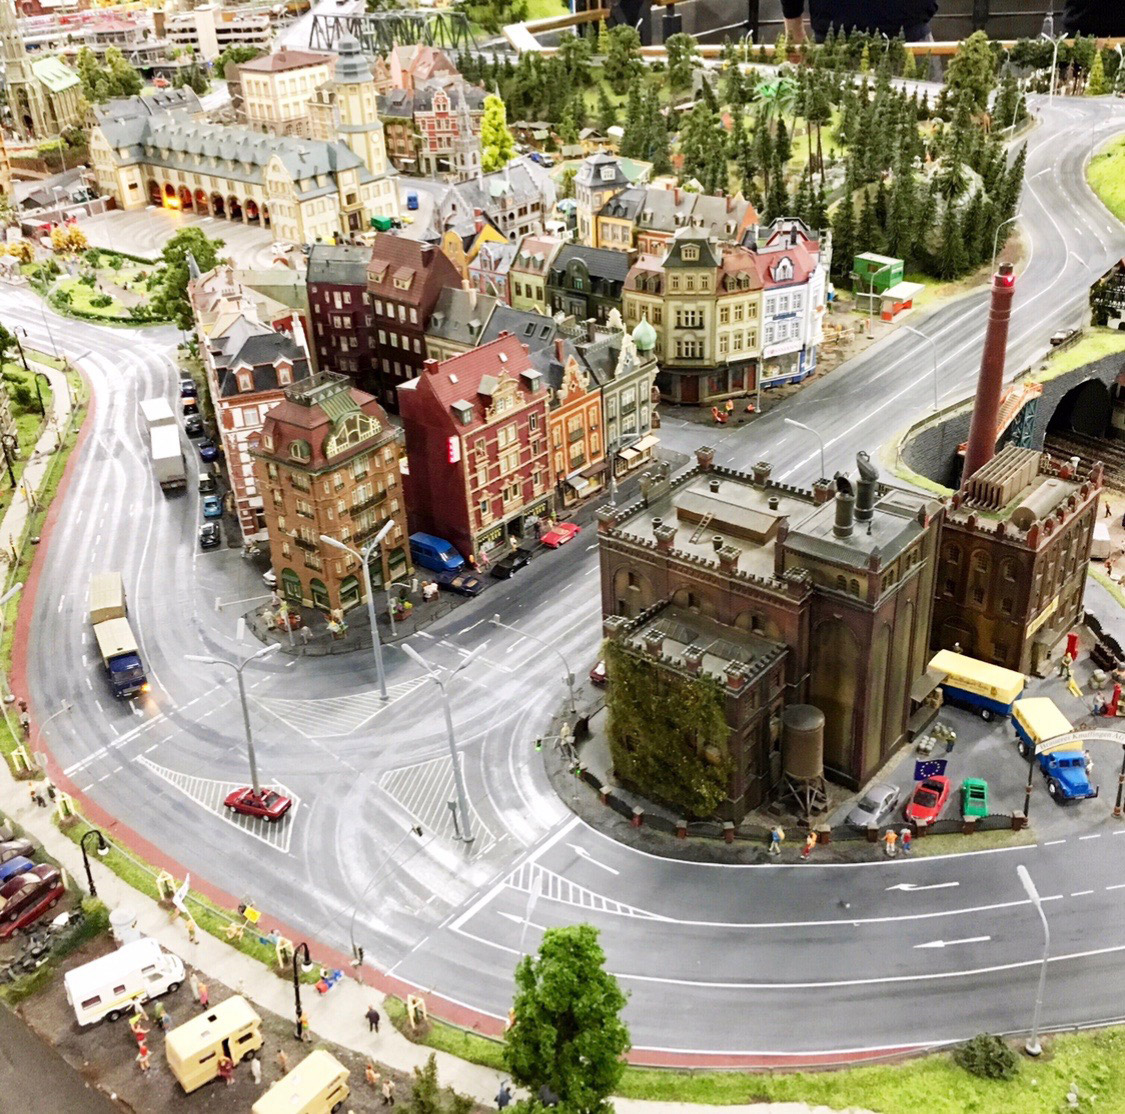 Das Miniaturwunderland in Hamburg zeigt einen Abschnitt der Stadt mit einer großen befahrenen Straße